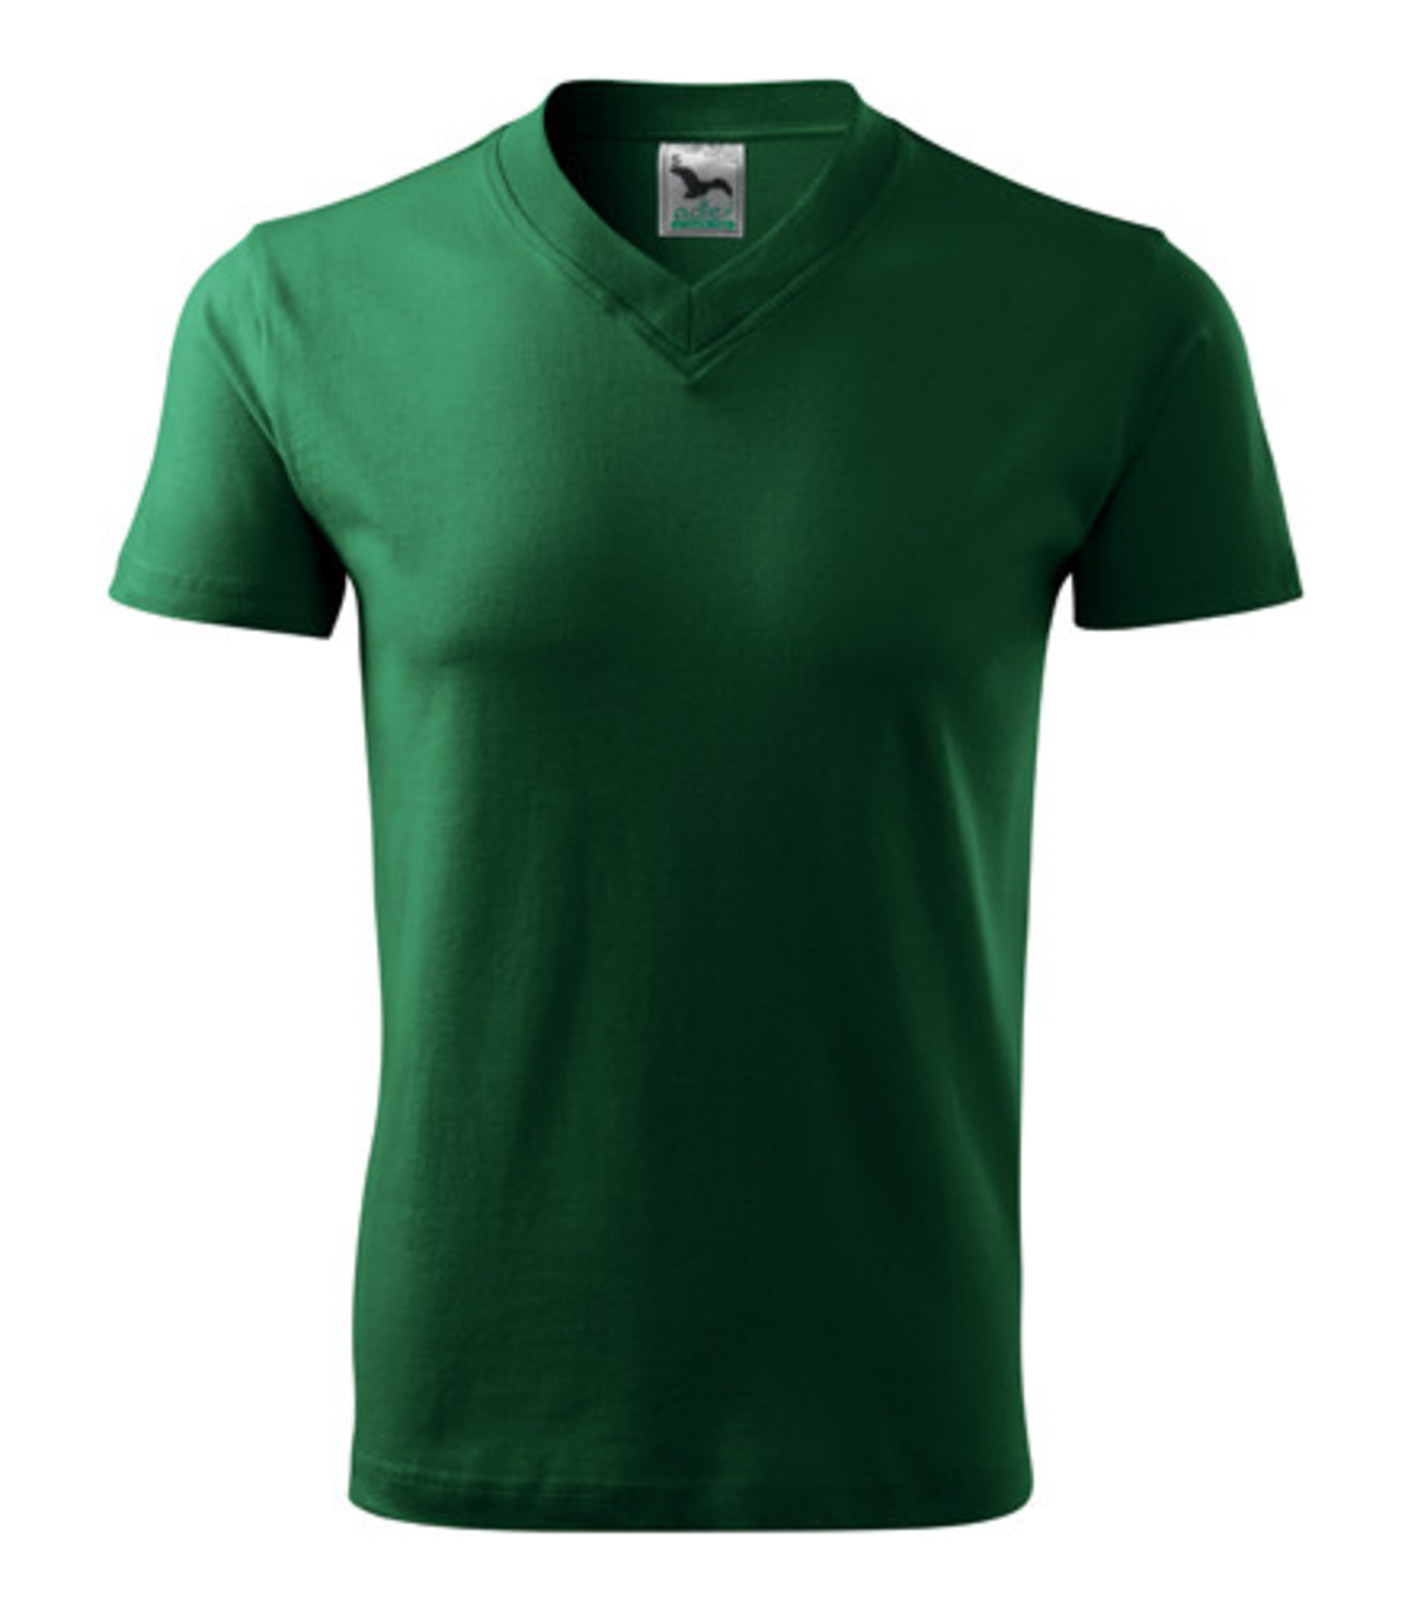 Unisex tričko s výstrihom Adler V-Neck 102 - veľkosť: L, farba: fľašková zelená